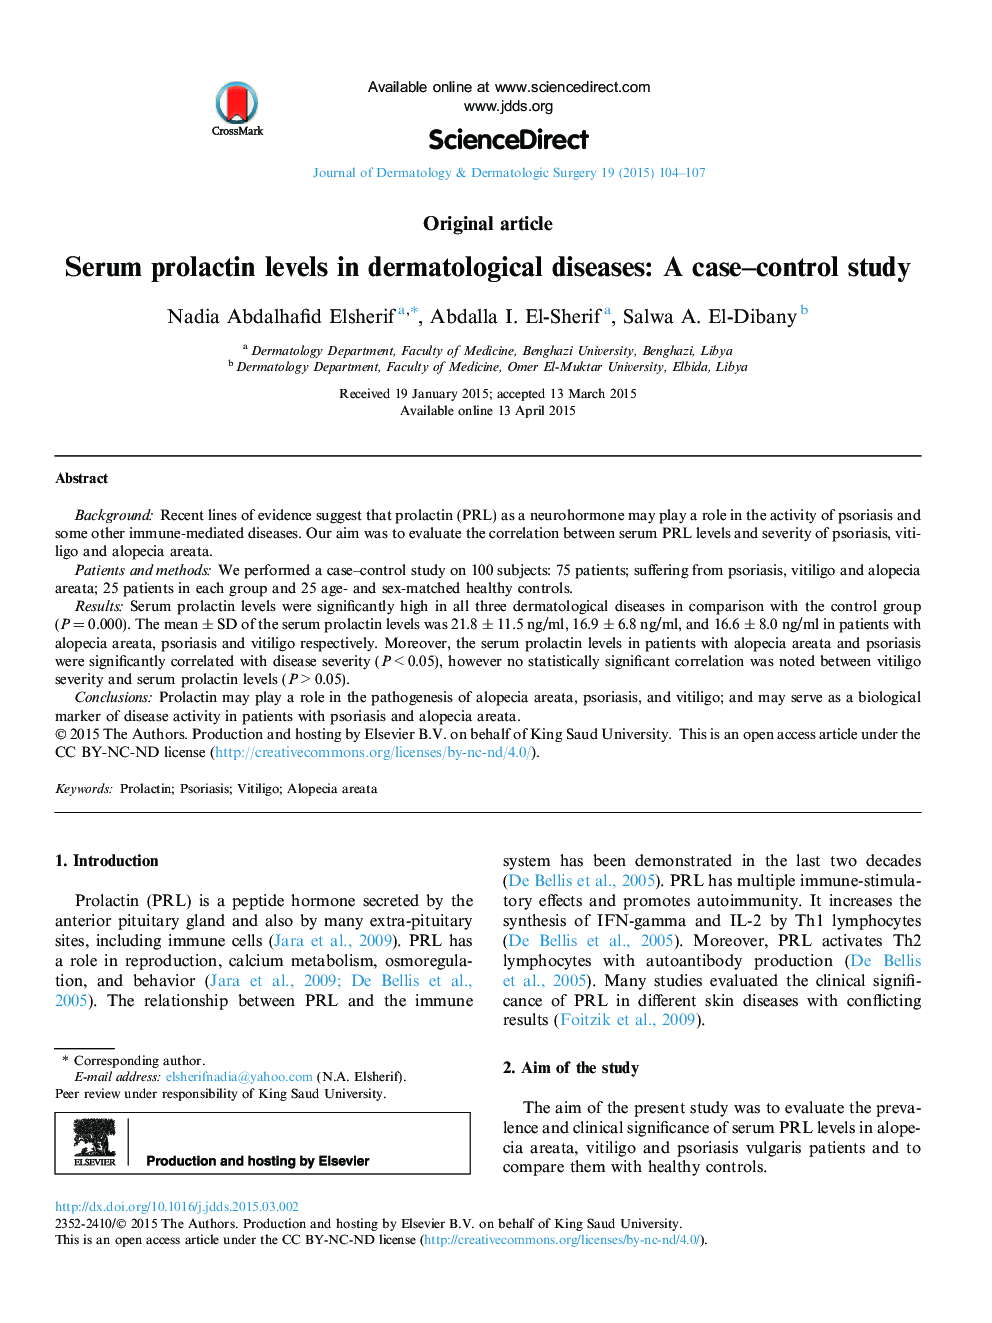 سطح پرولاکتین سرم در بیماری های پوستی: یک مطالعه کنترل کایزا 